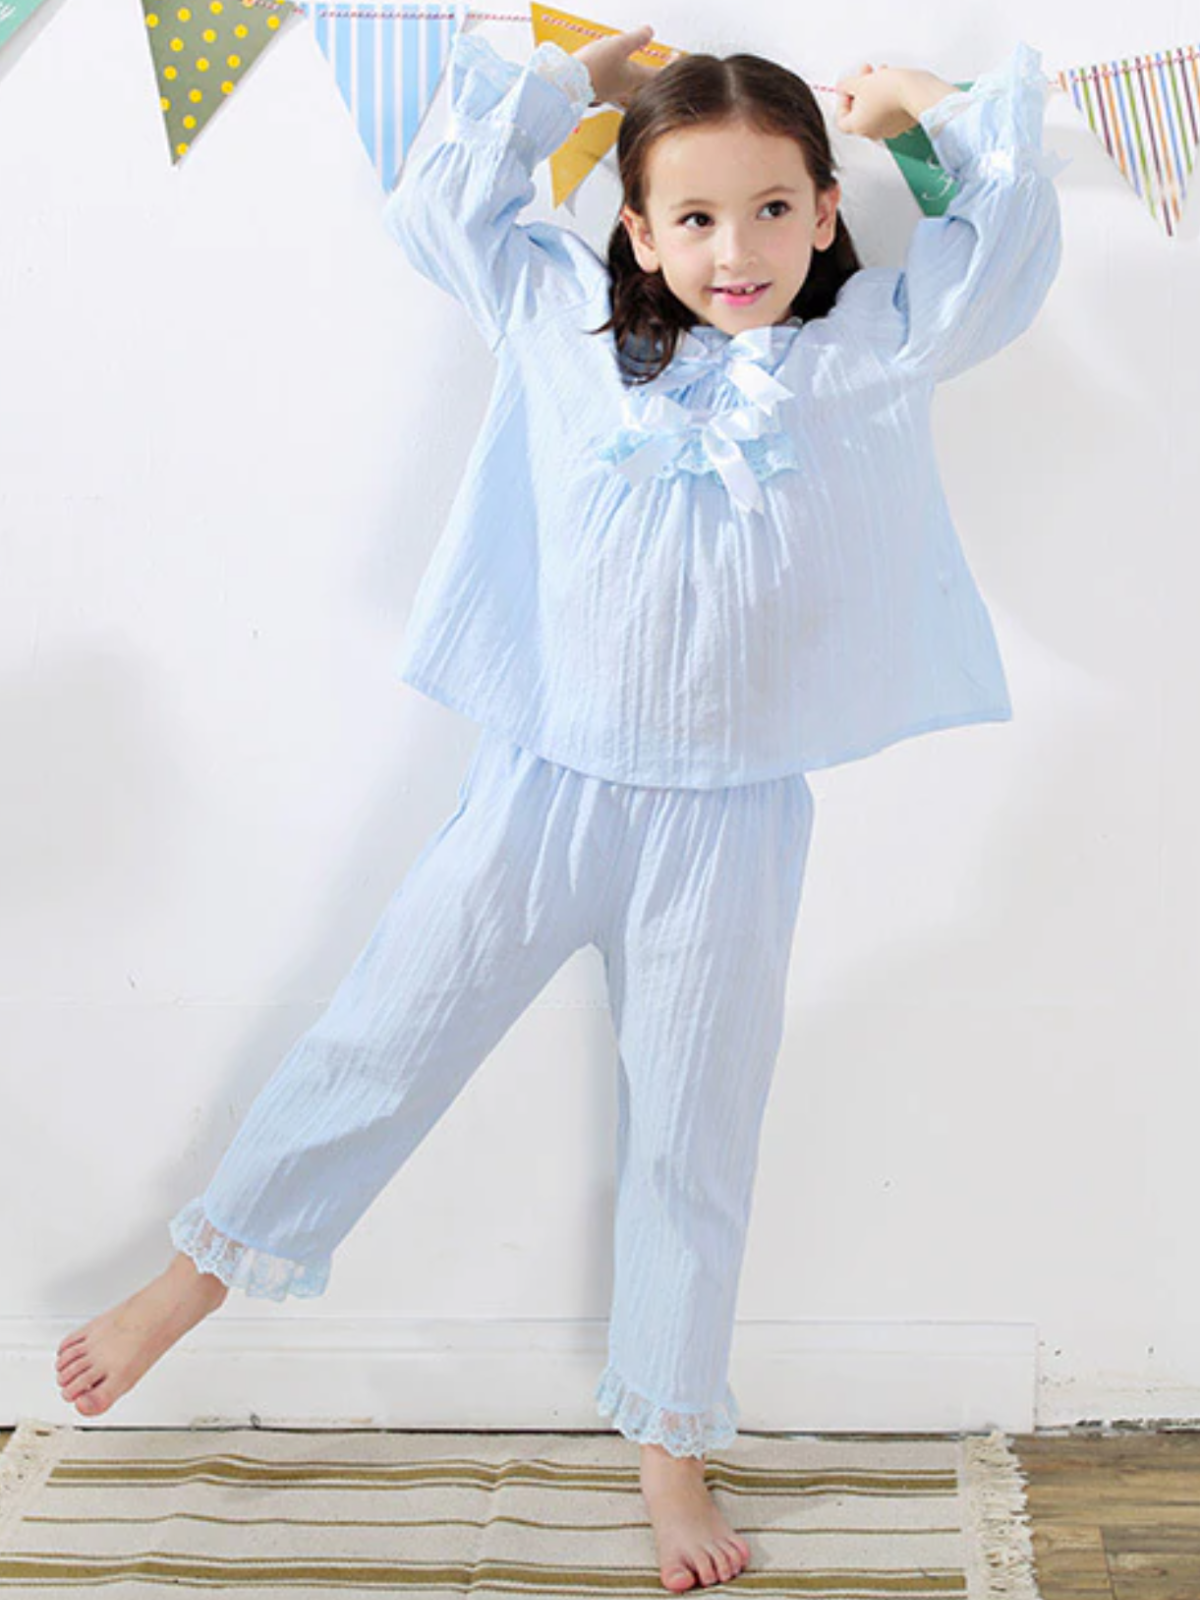 Mia Belle Girls Bows & Lace Pajamas | Girls Loungewear